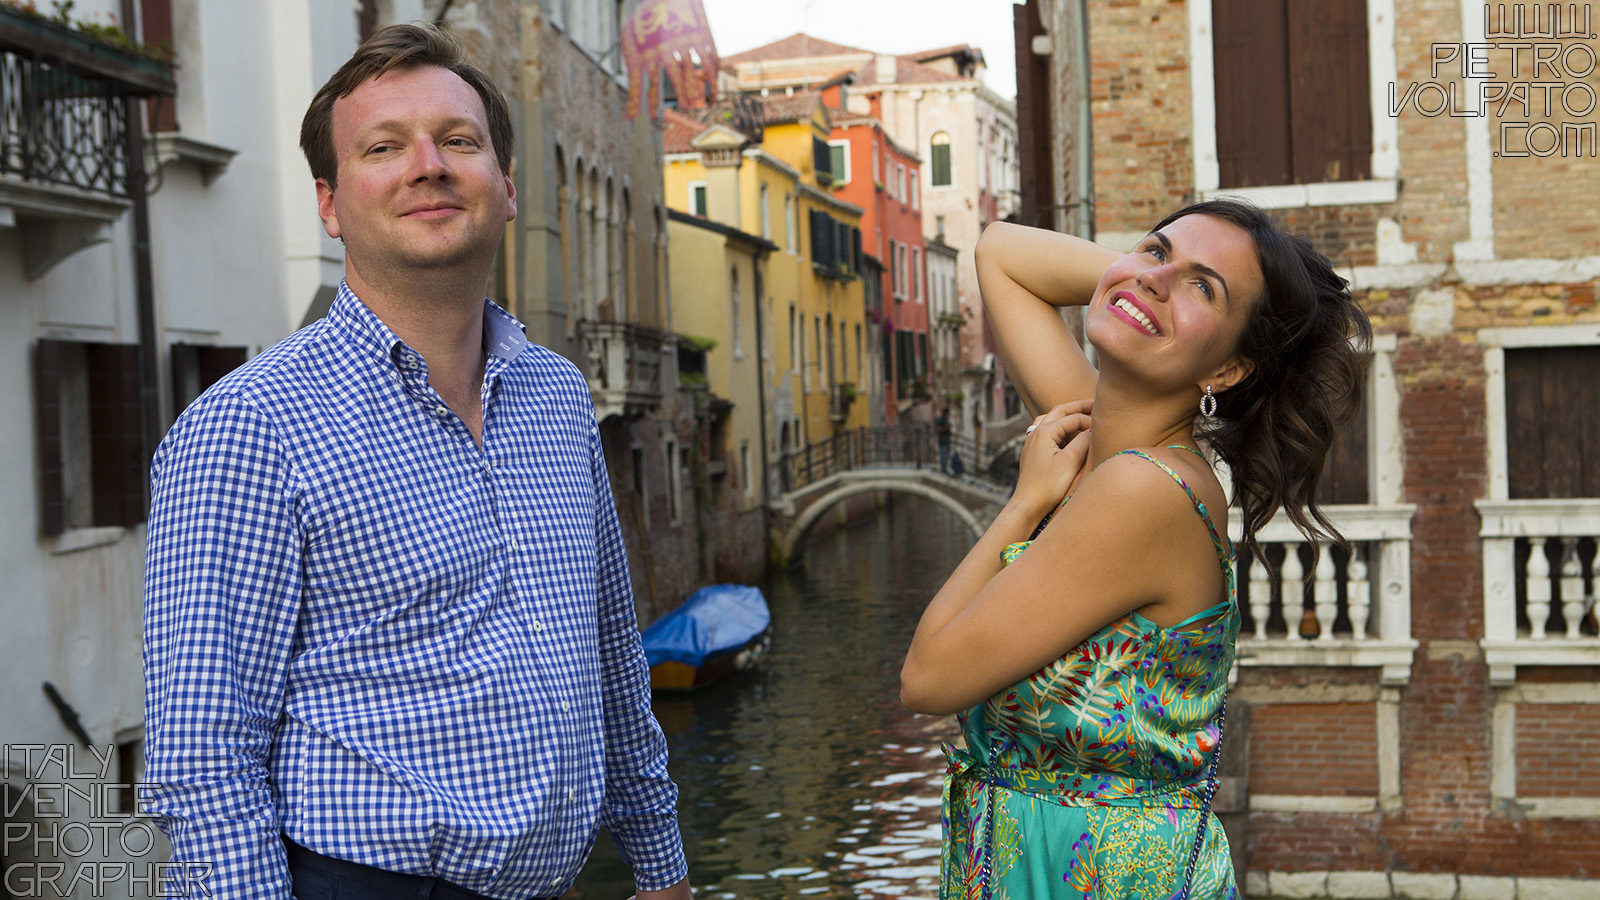 Venezia fotografo per servizio fotografico vacanza romantica coppia ~ Foto durante passeggiata romantica e divertente a Venezia